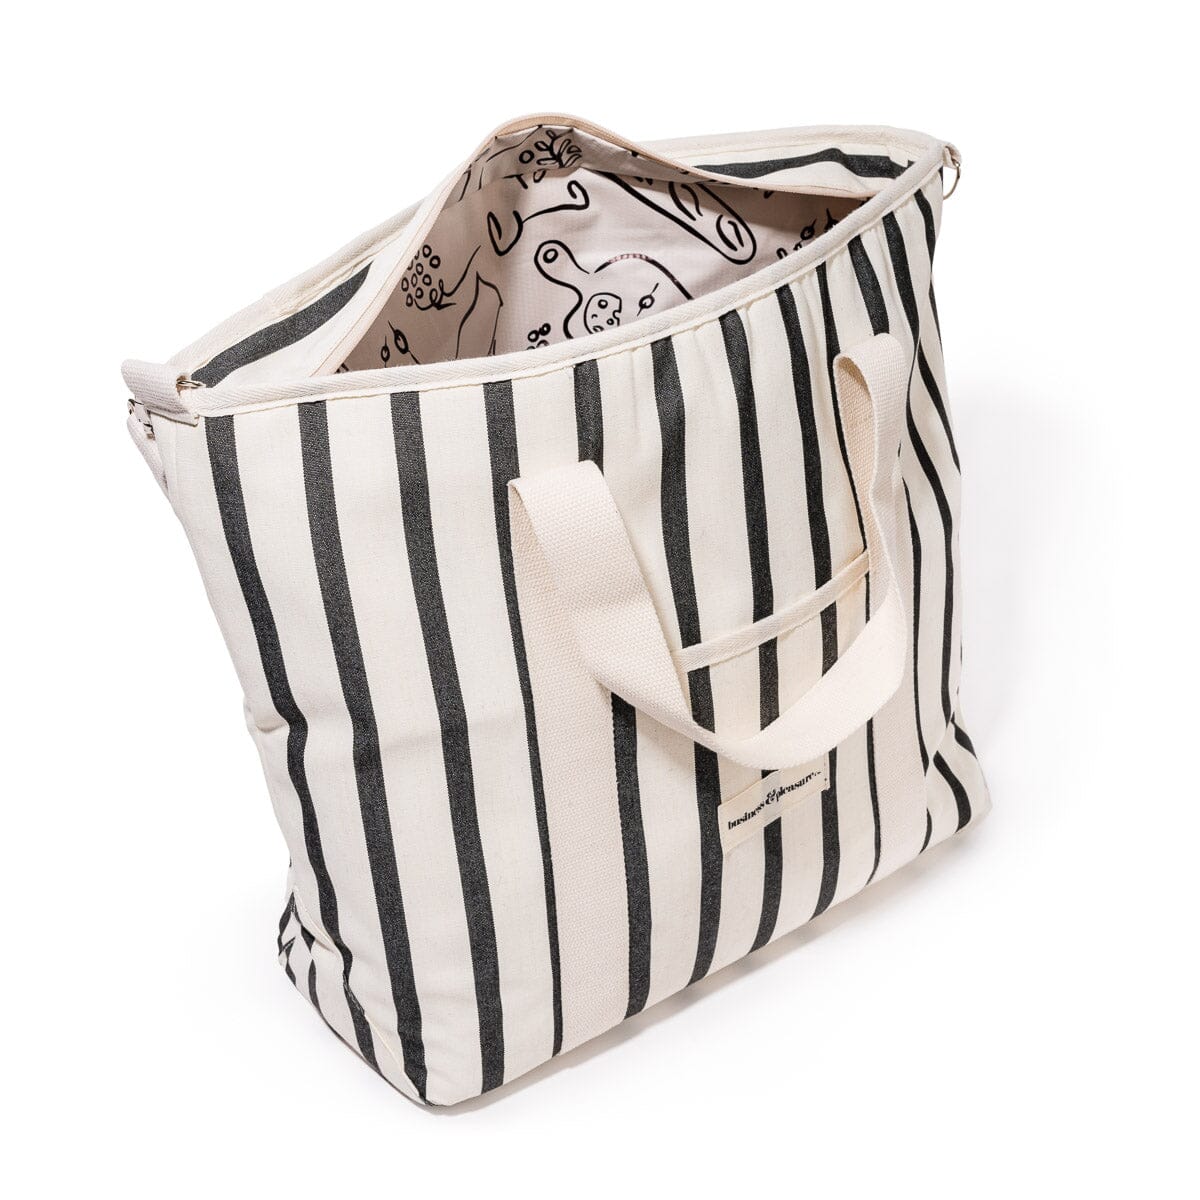 The Cooler Tote Bag - Monaco Black Stripe Cooler Tote Business & Pleasure Co 